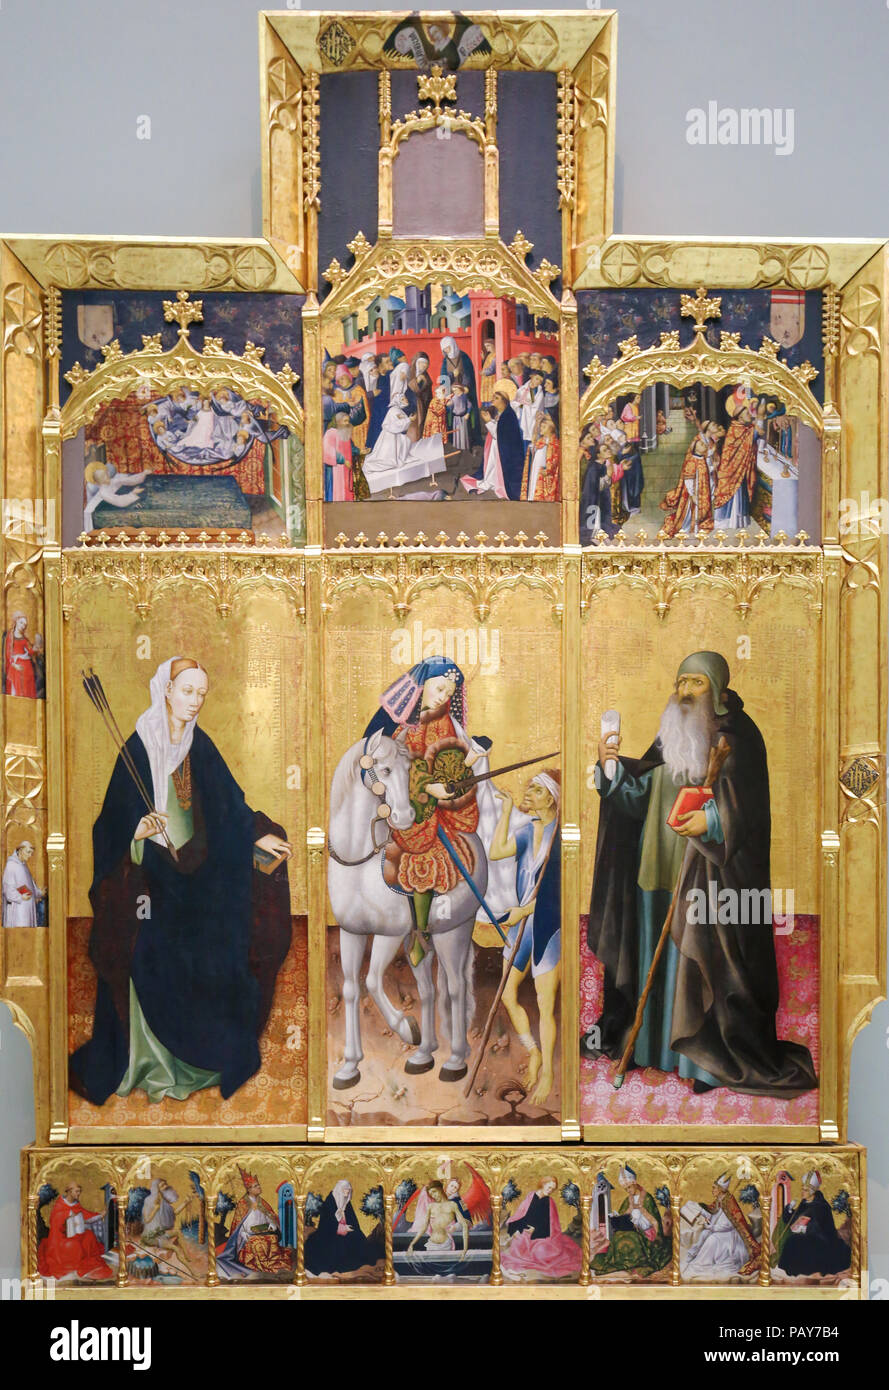 Valencia, Espagne - 15 juin 2018 : retable médiéval représentant les saints chrétiens Ursula, Martin de Tours et Antoine le Grand à Valence, Espagne Banque D'Images